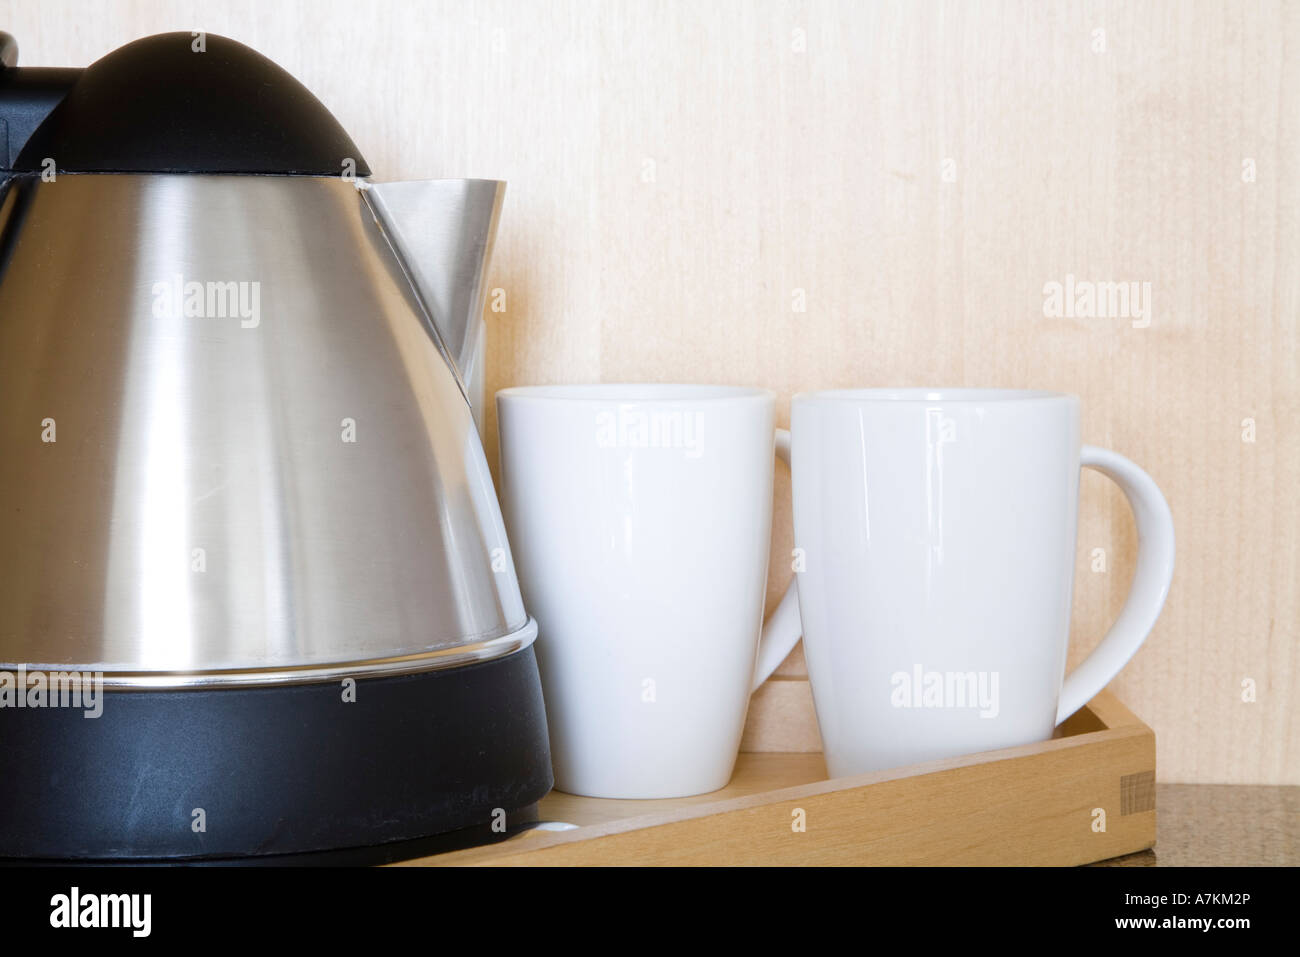 Wasserkocher und Tassen auf einem Holztablett in einem Hotelzimmer  Stockfotografie - Alamy